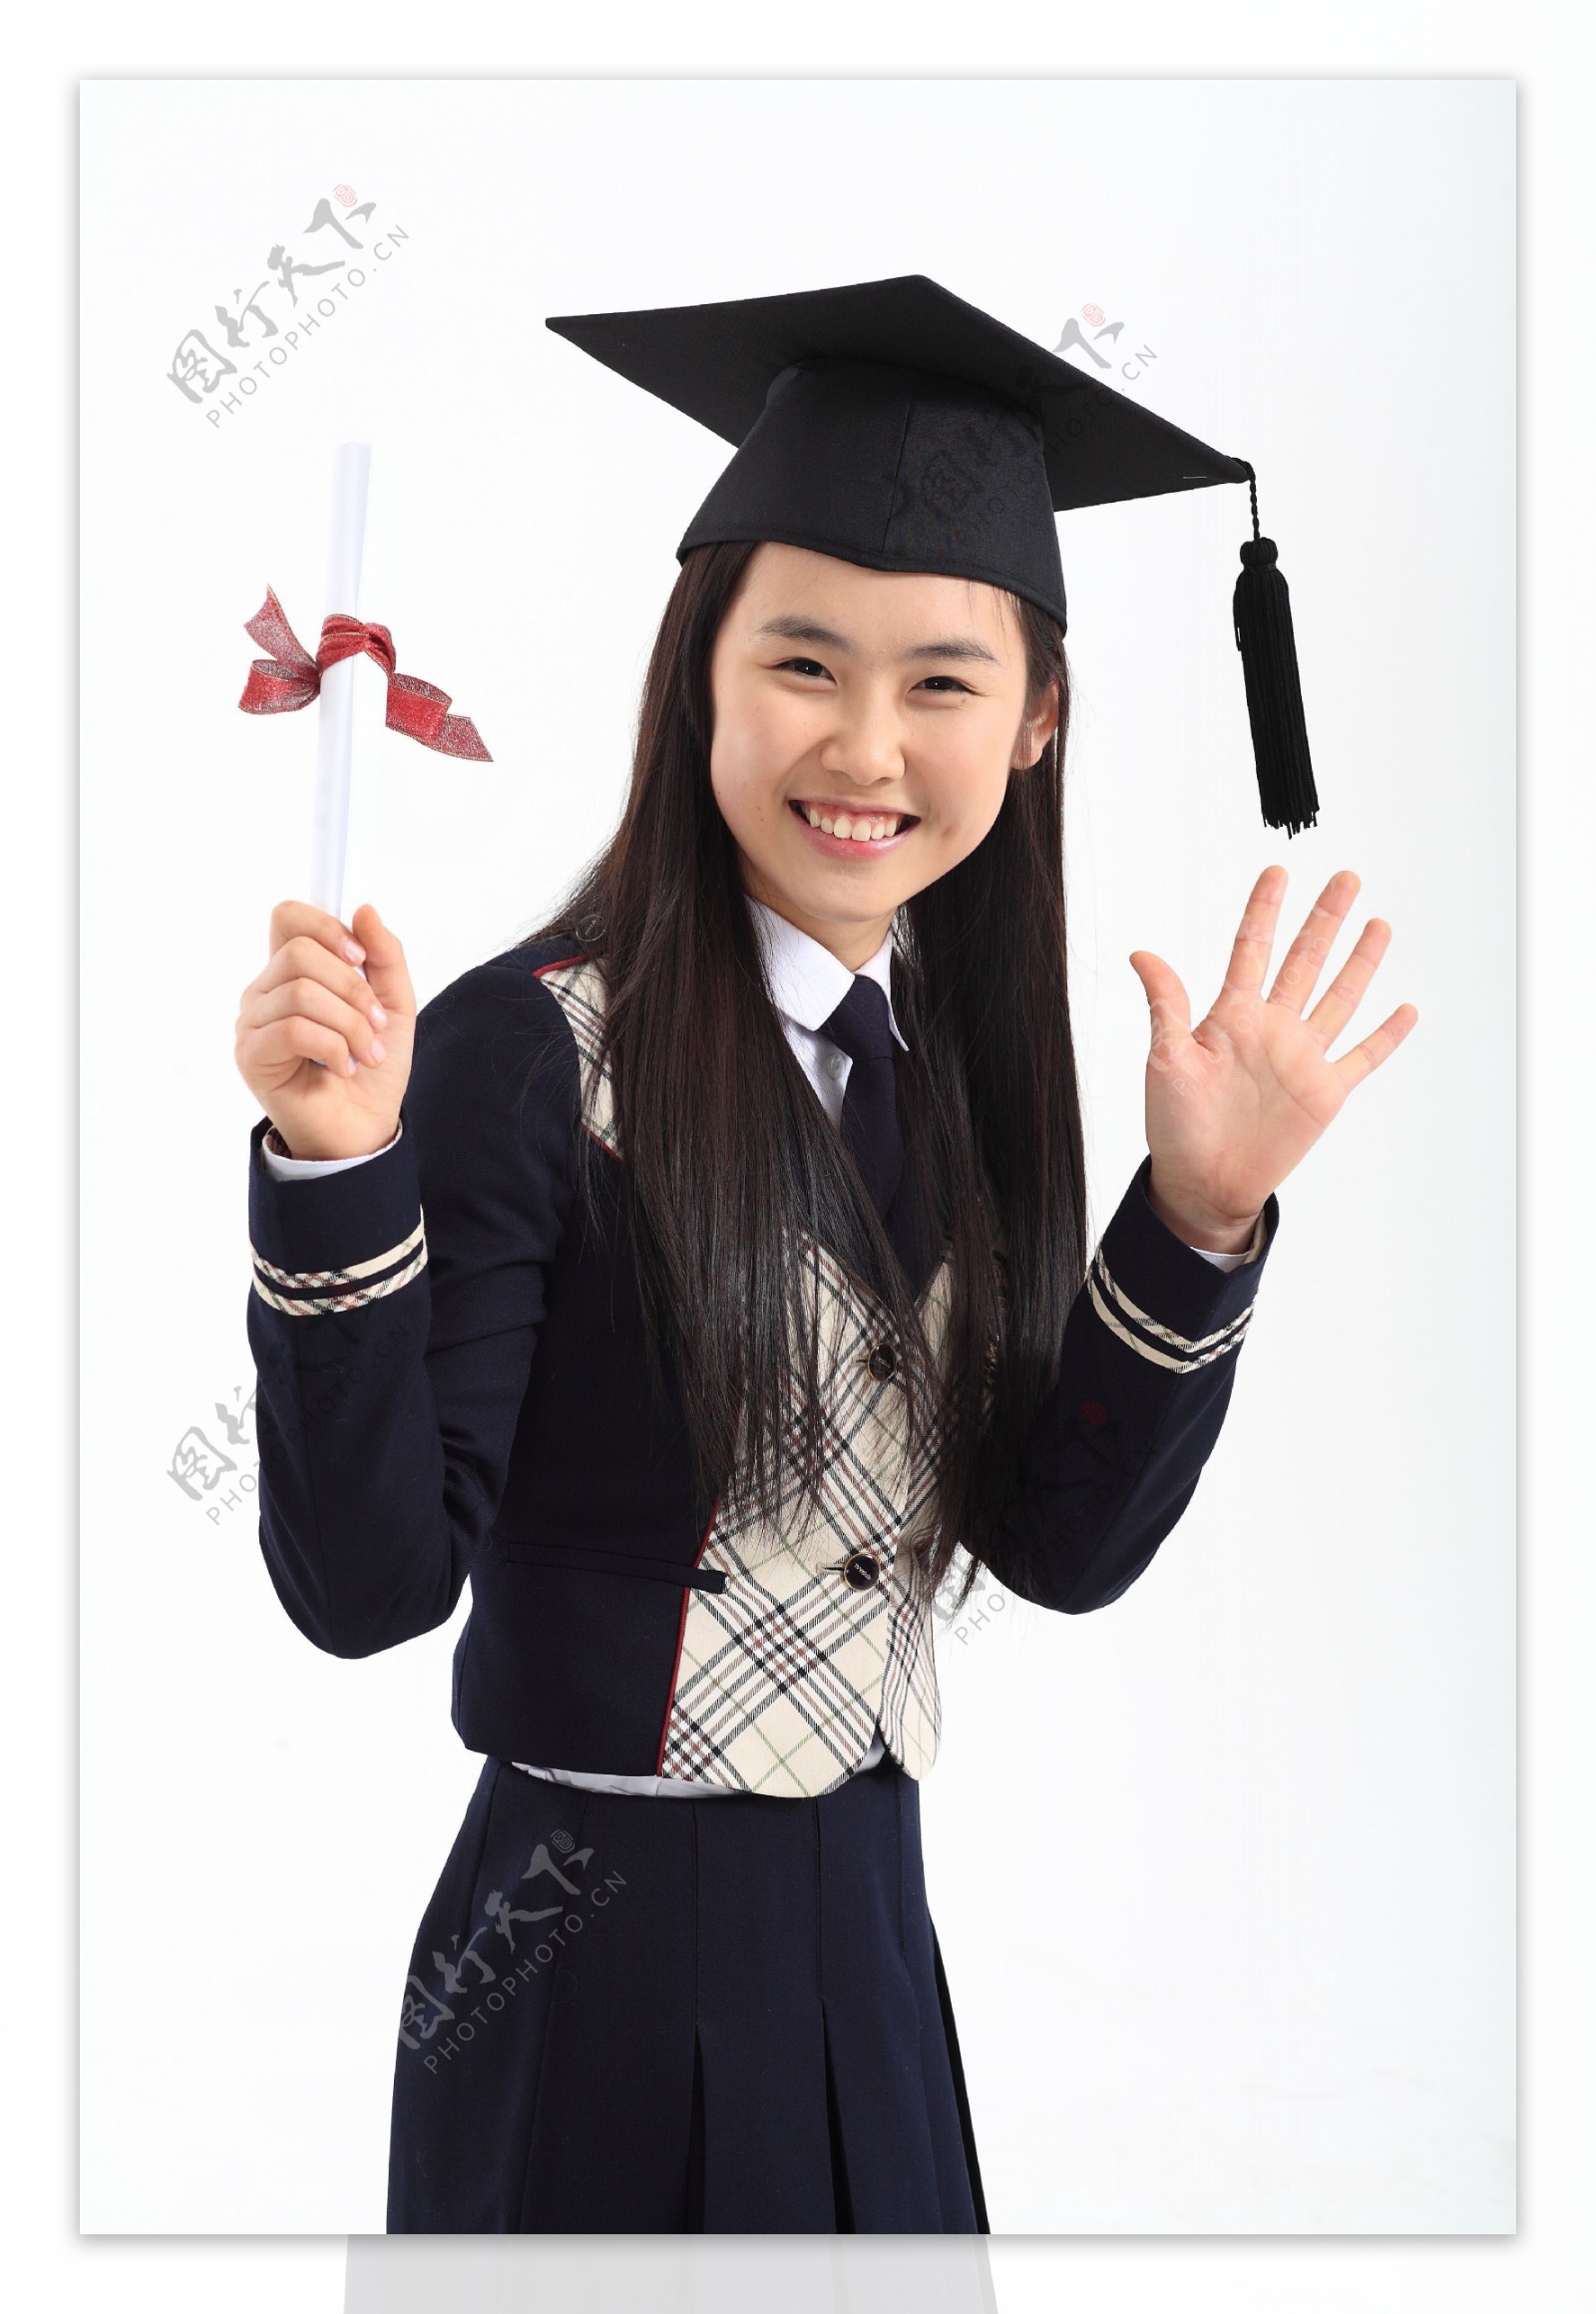 戴着博士帽举着证书的开心女孩图片图片